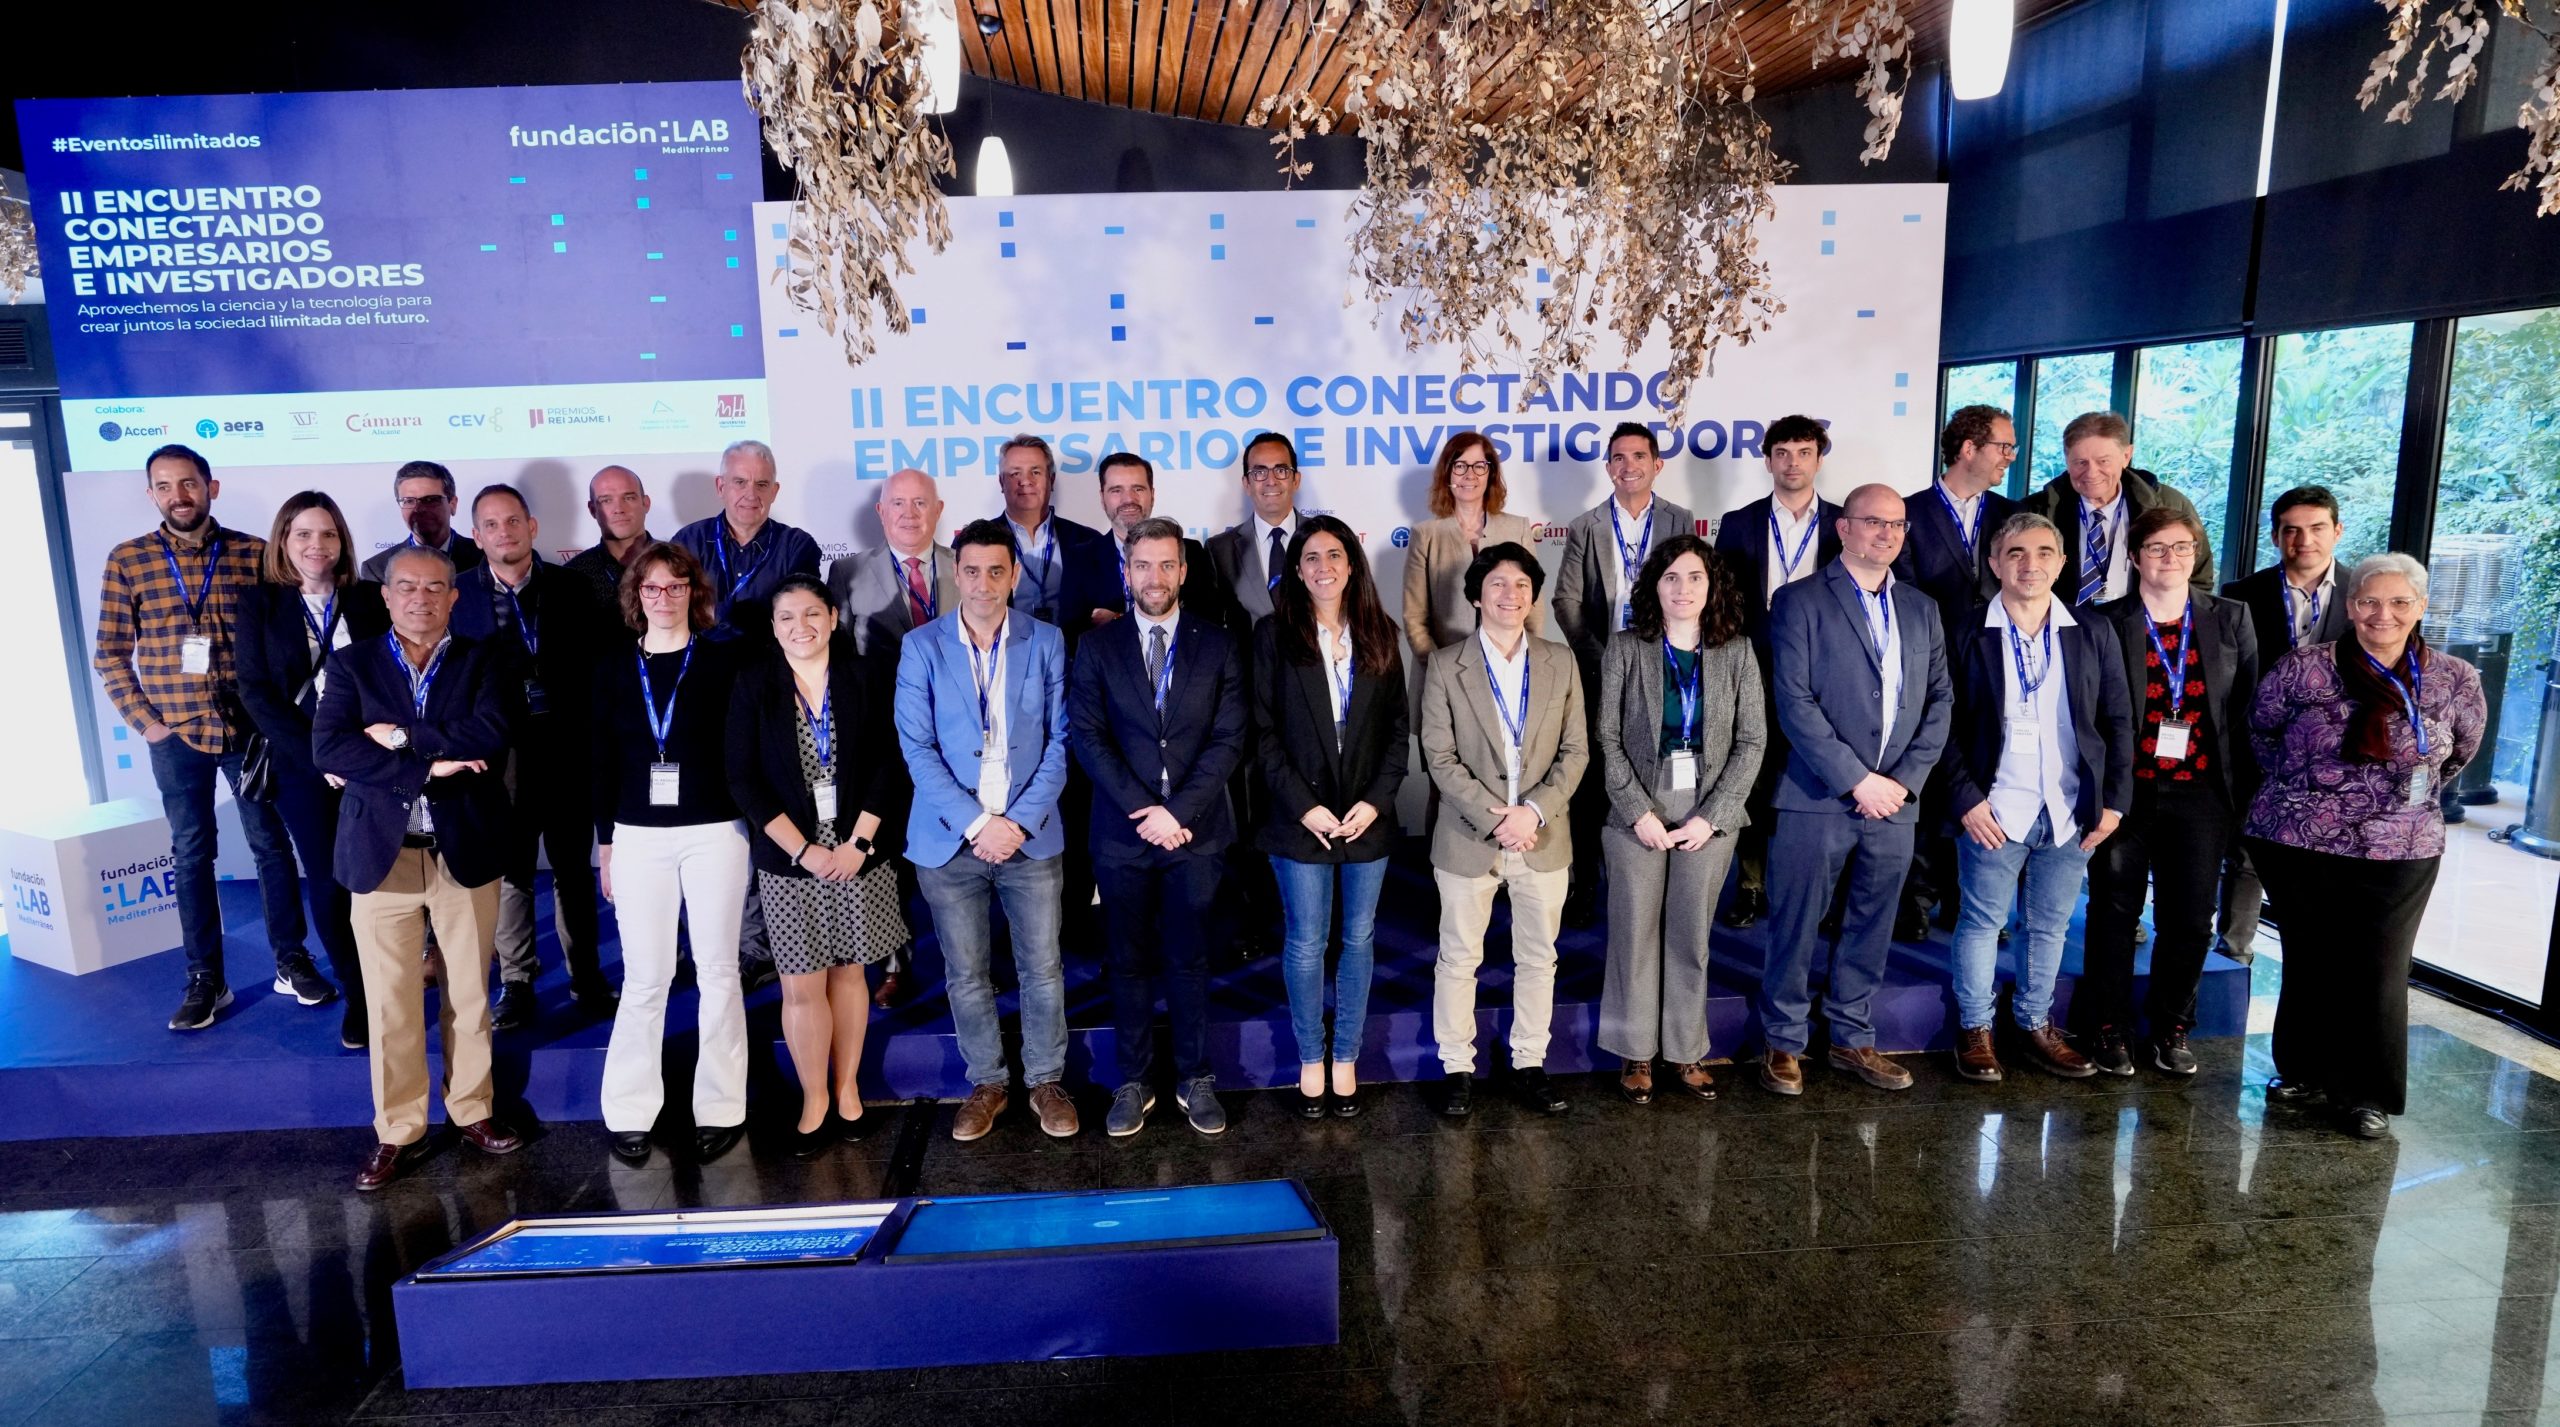 Fundación LAB Mediterráneo fomenta la conexión entre empresarios e investigadores en colaboración con AccenT, Aeroport de Castelló, AVE, CEV Castellón, Consejo de Cámaras de la Comunitat Valenciana y la UJI